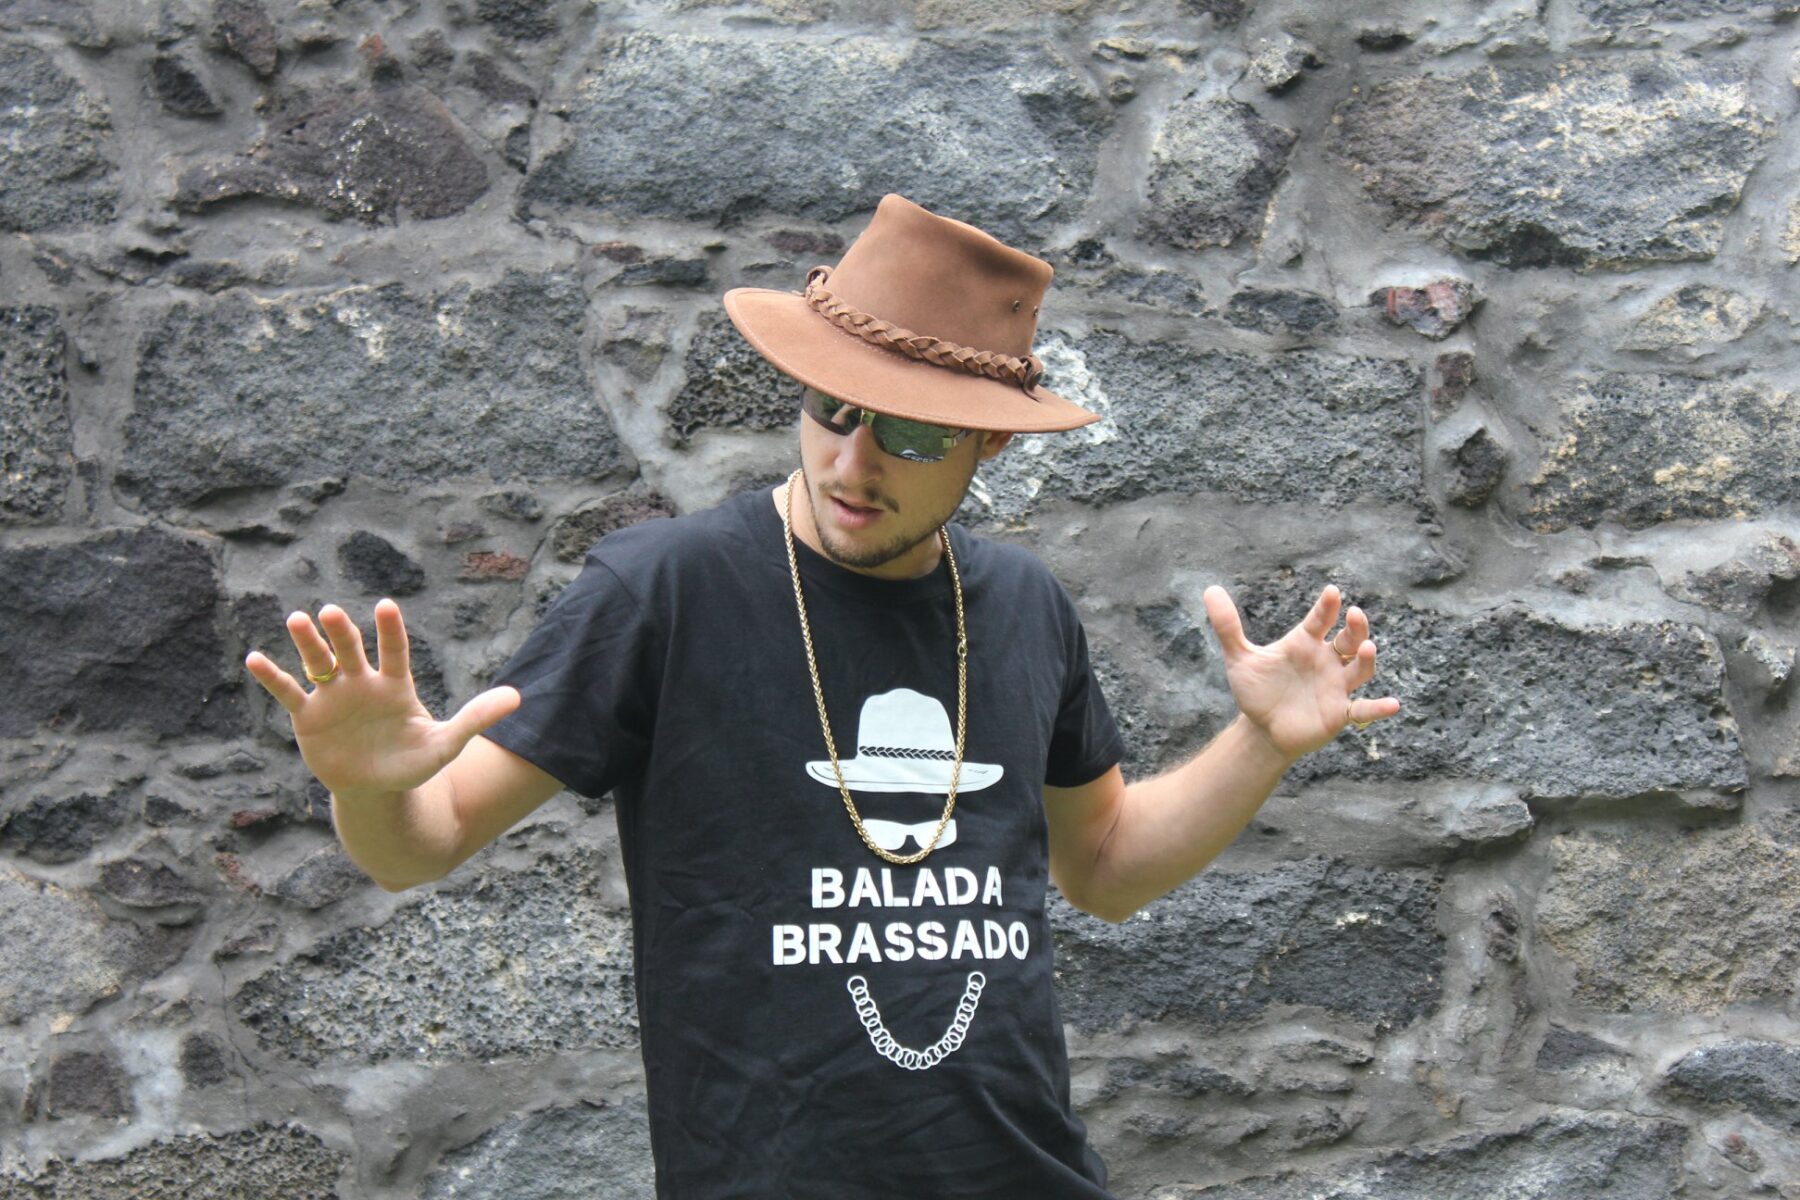 Balada Brassado – Rapper açoriano, humorista e escritor